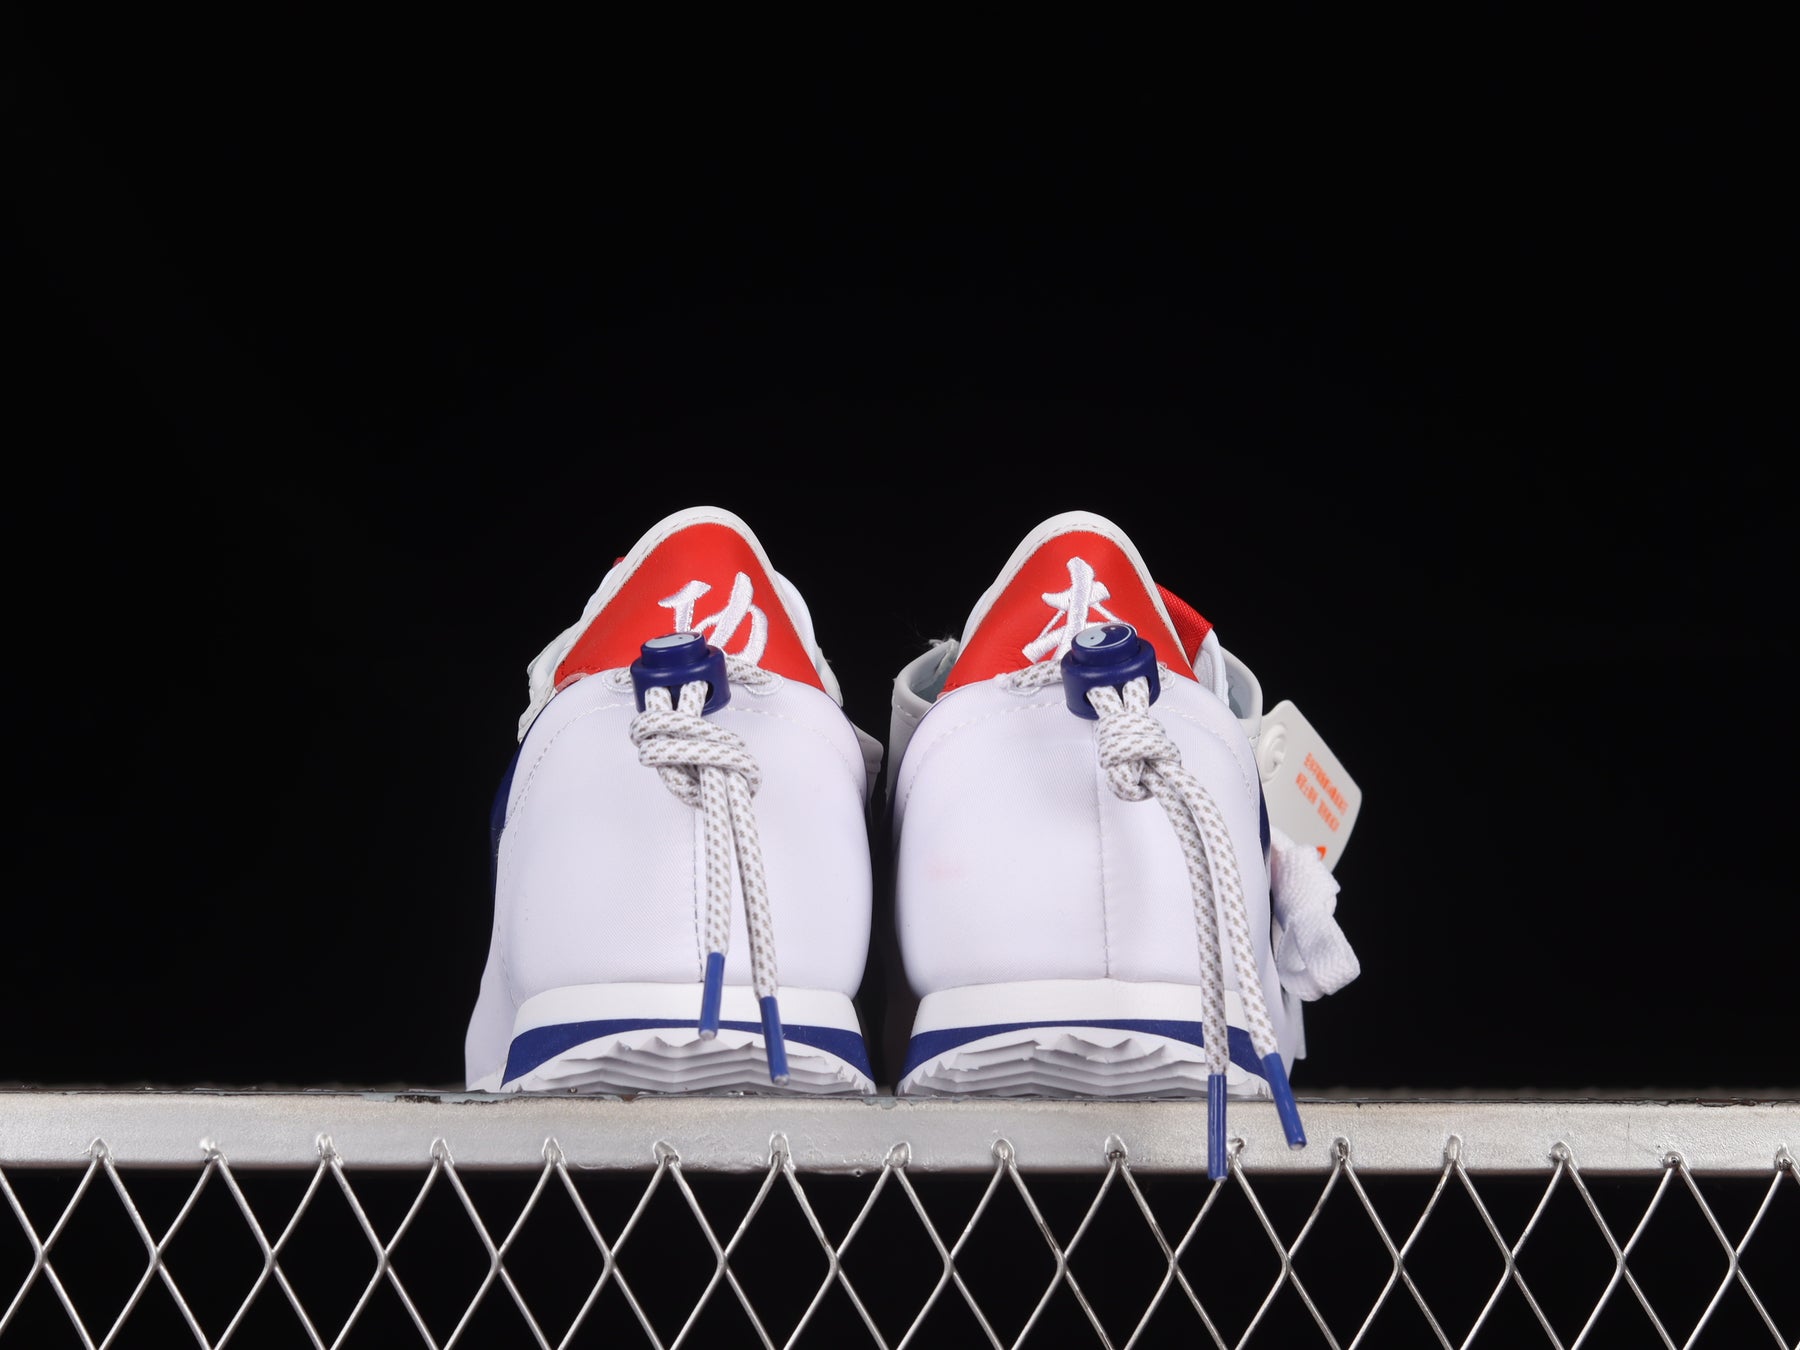 Clot x NikeMens Cortez - Bruce Lee White